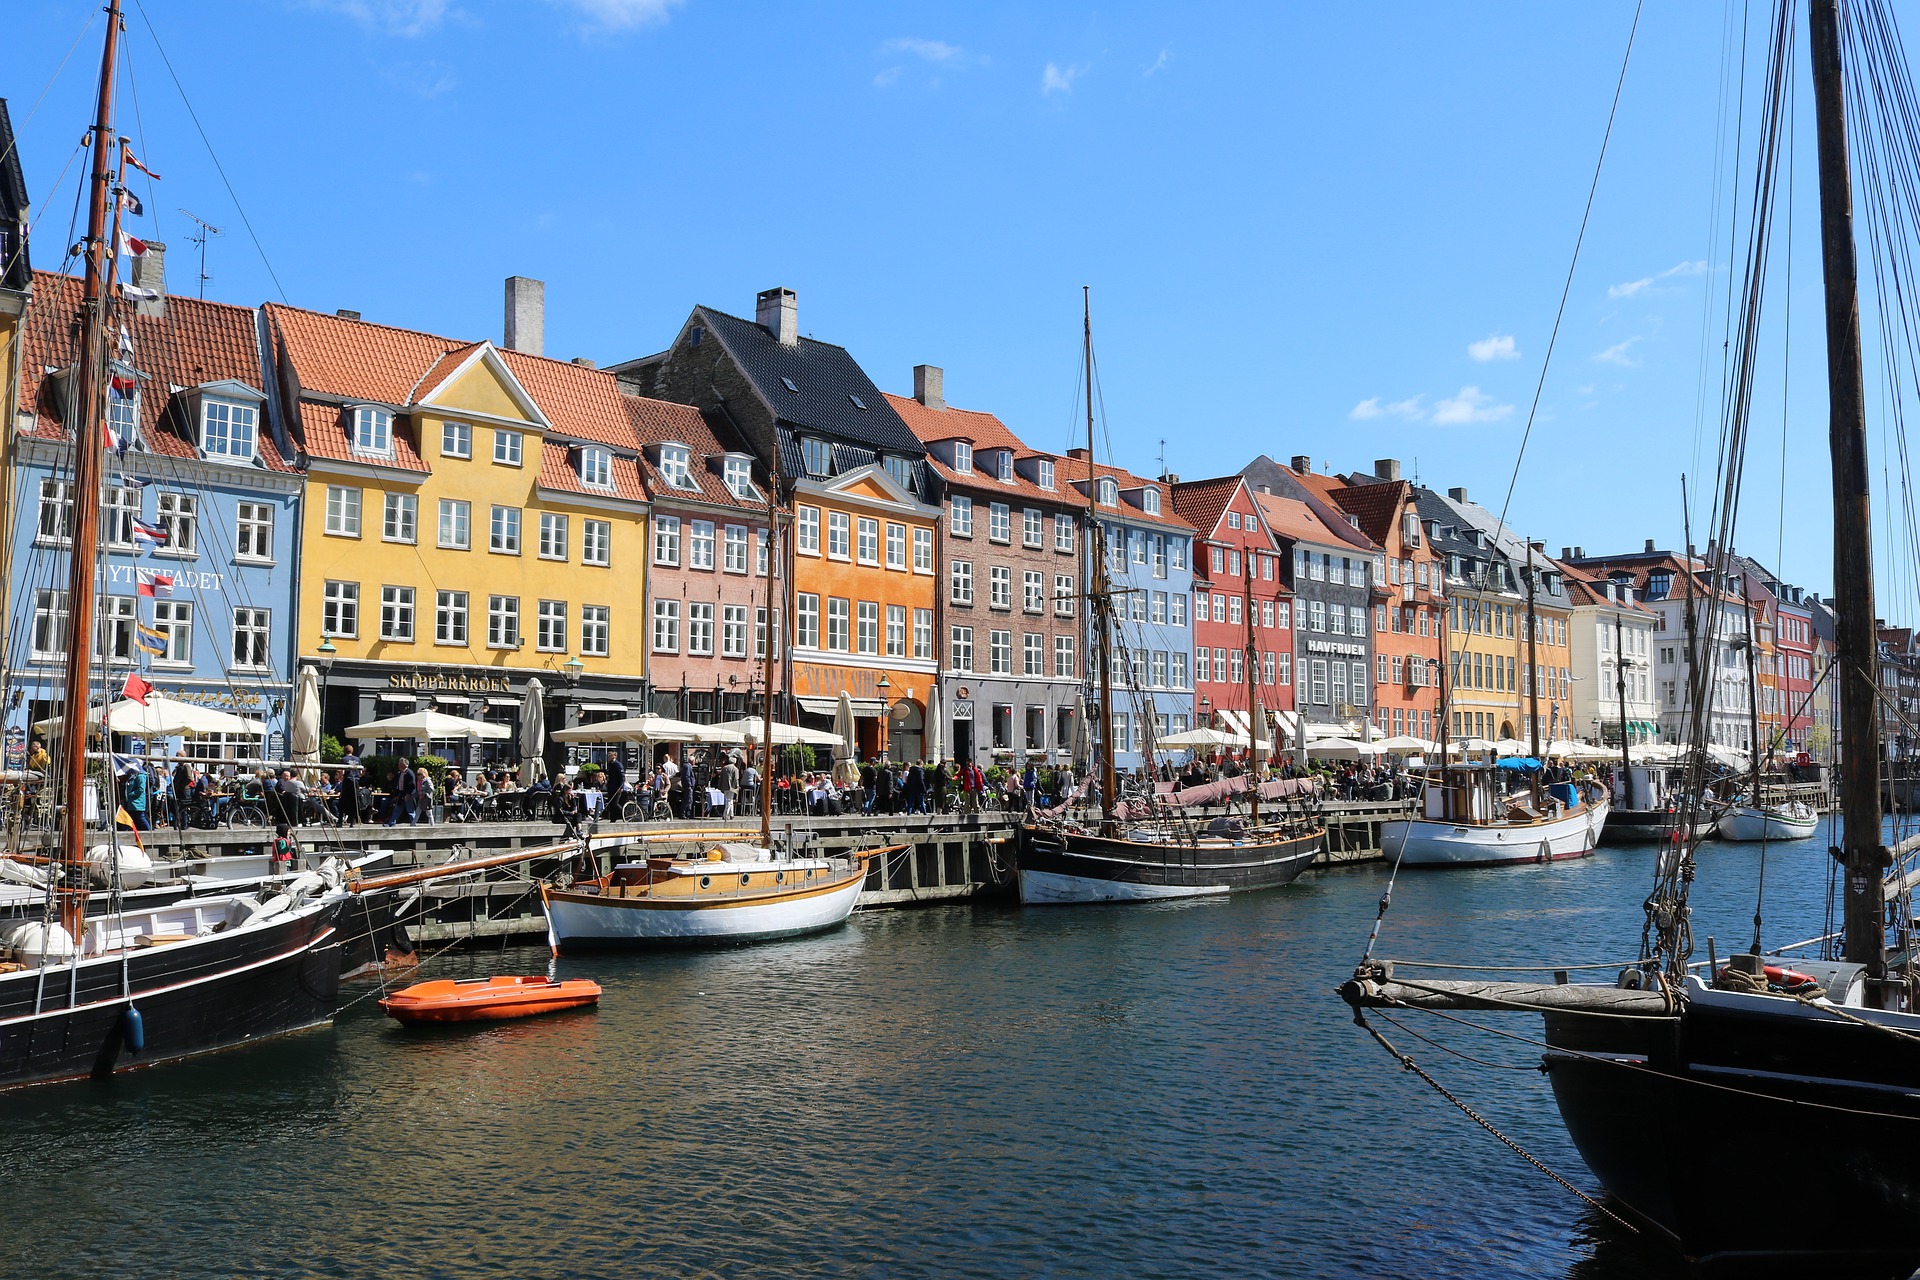 Dänemark entdecken - darauf freuen sich Ihre Kinder